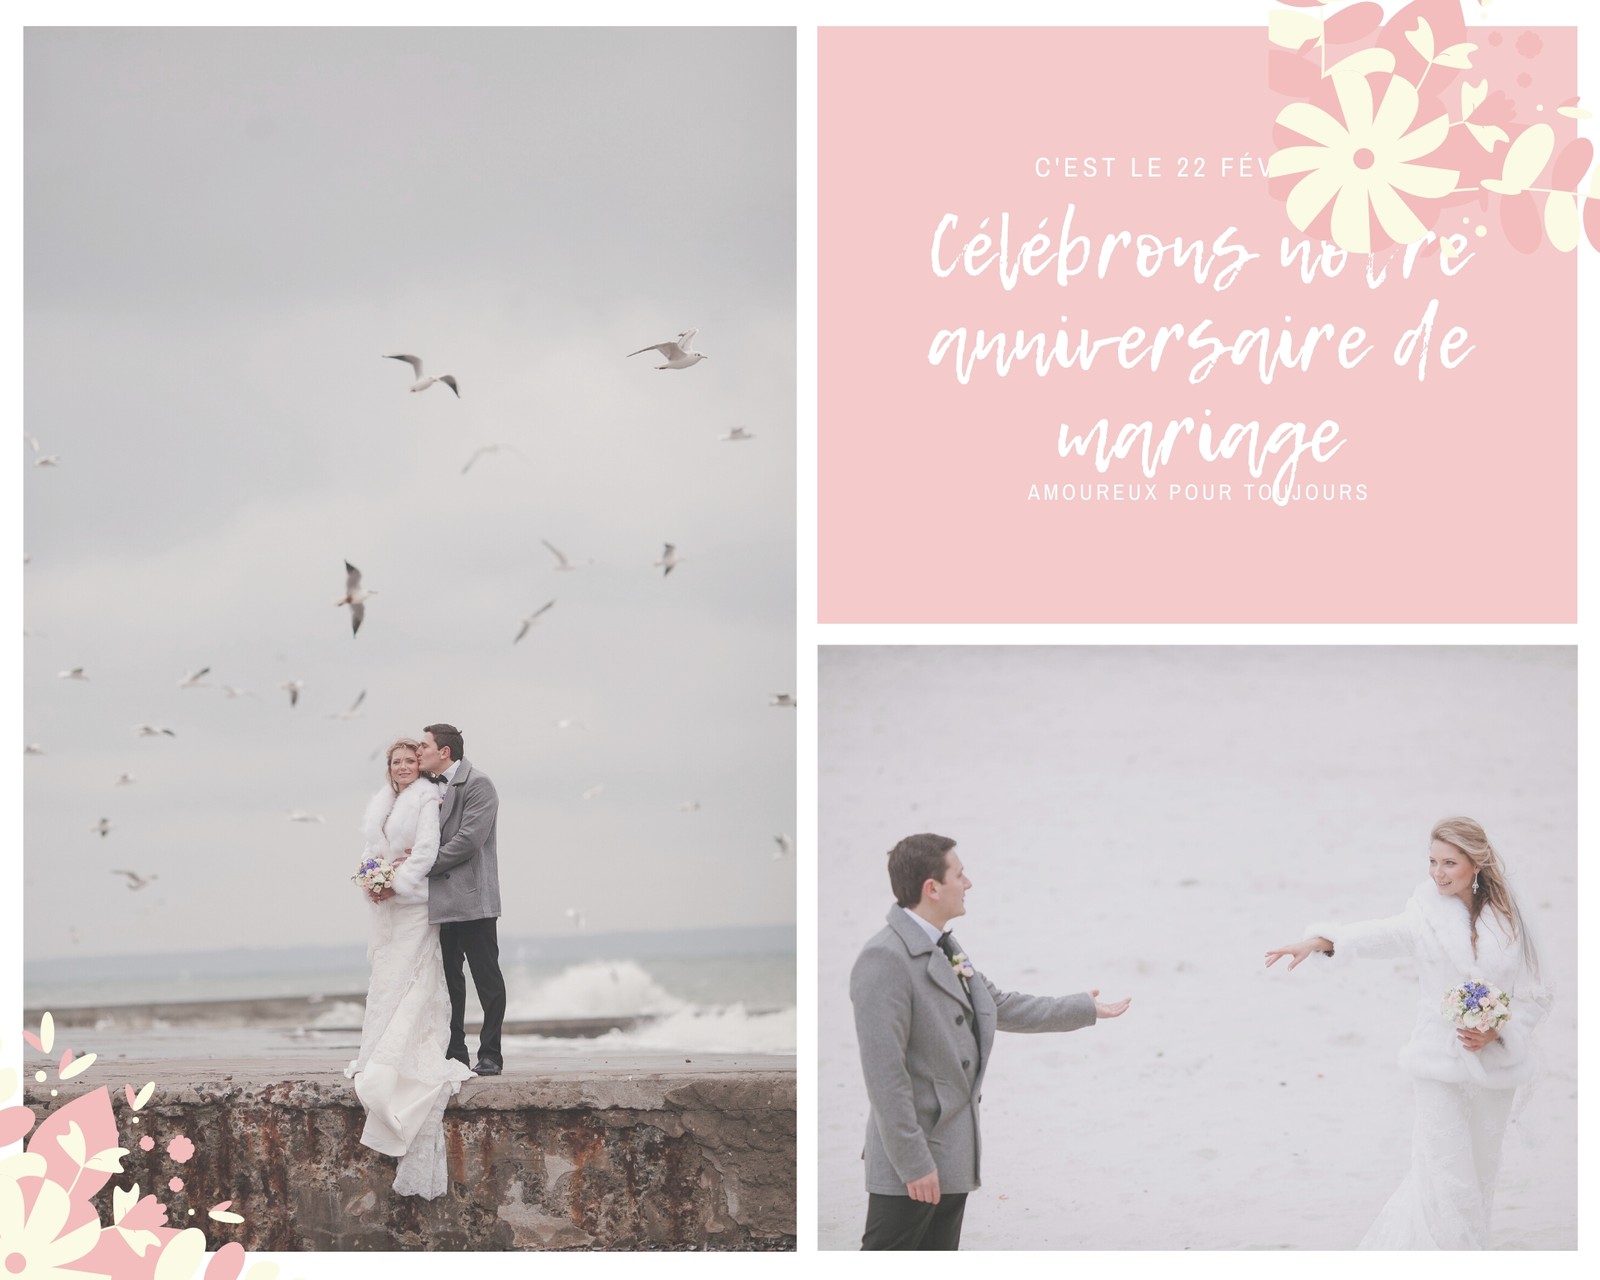 Montage photo floral rose pastel de mariage